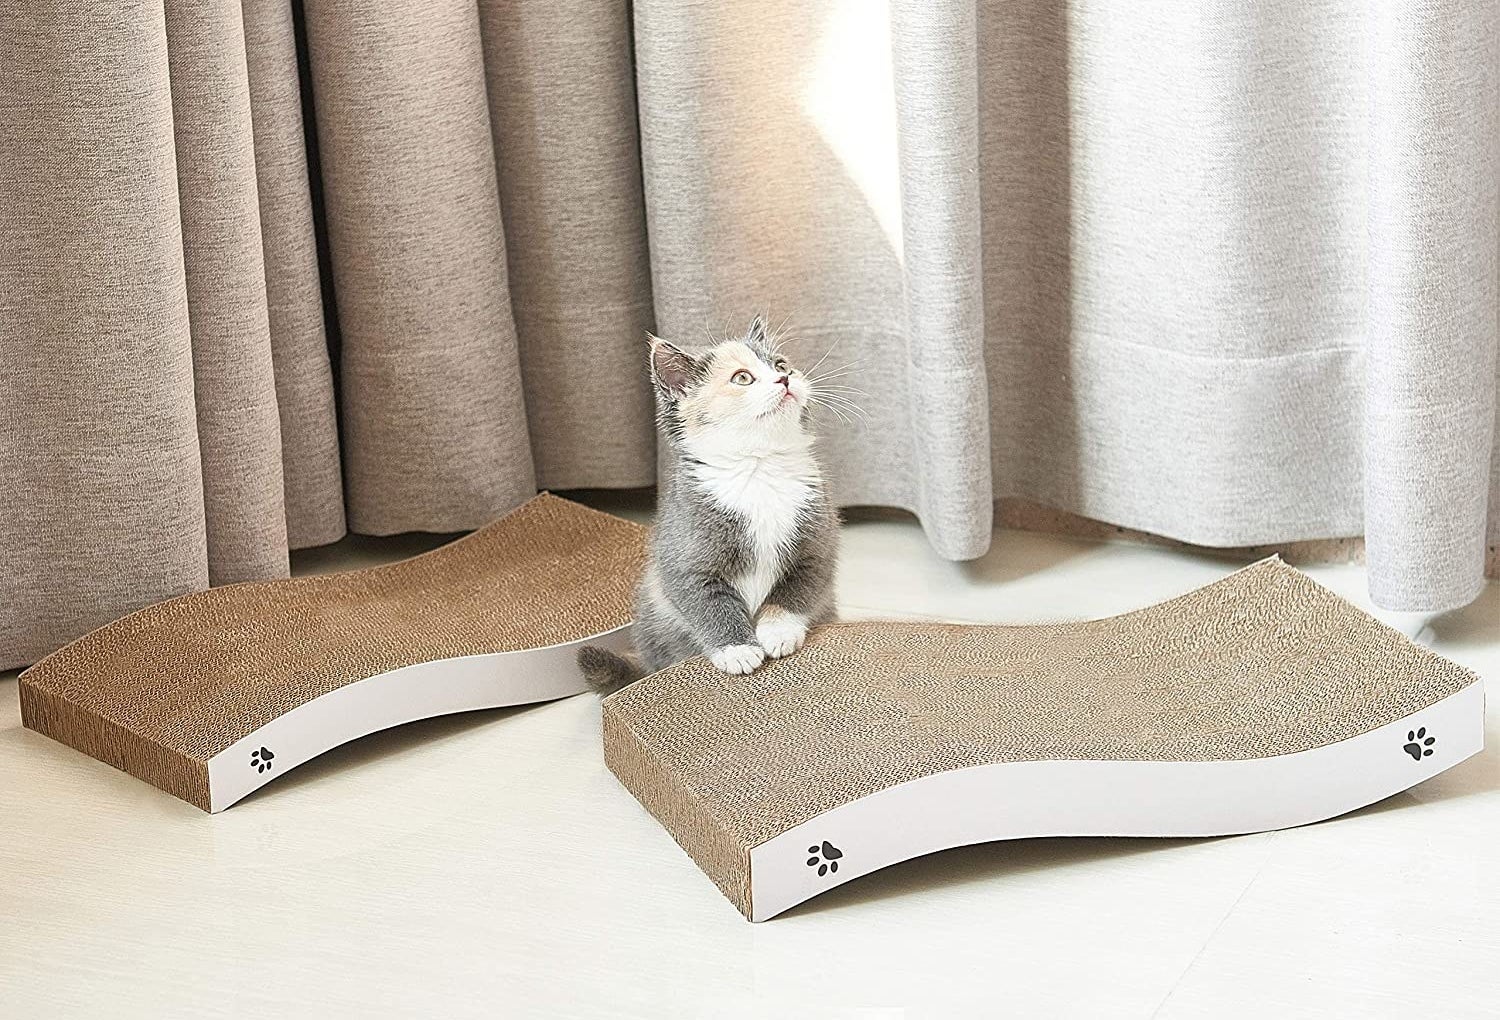 a kitten sitting in between two wavy cardboard scratch pads